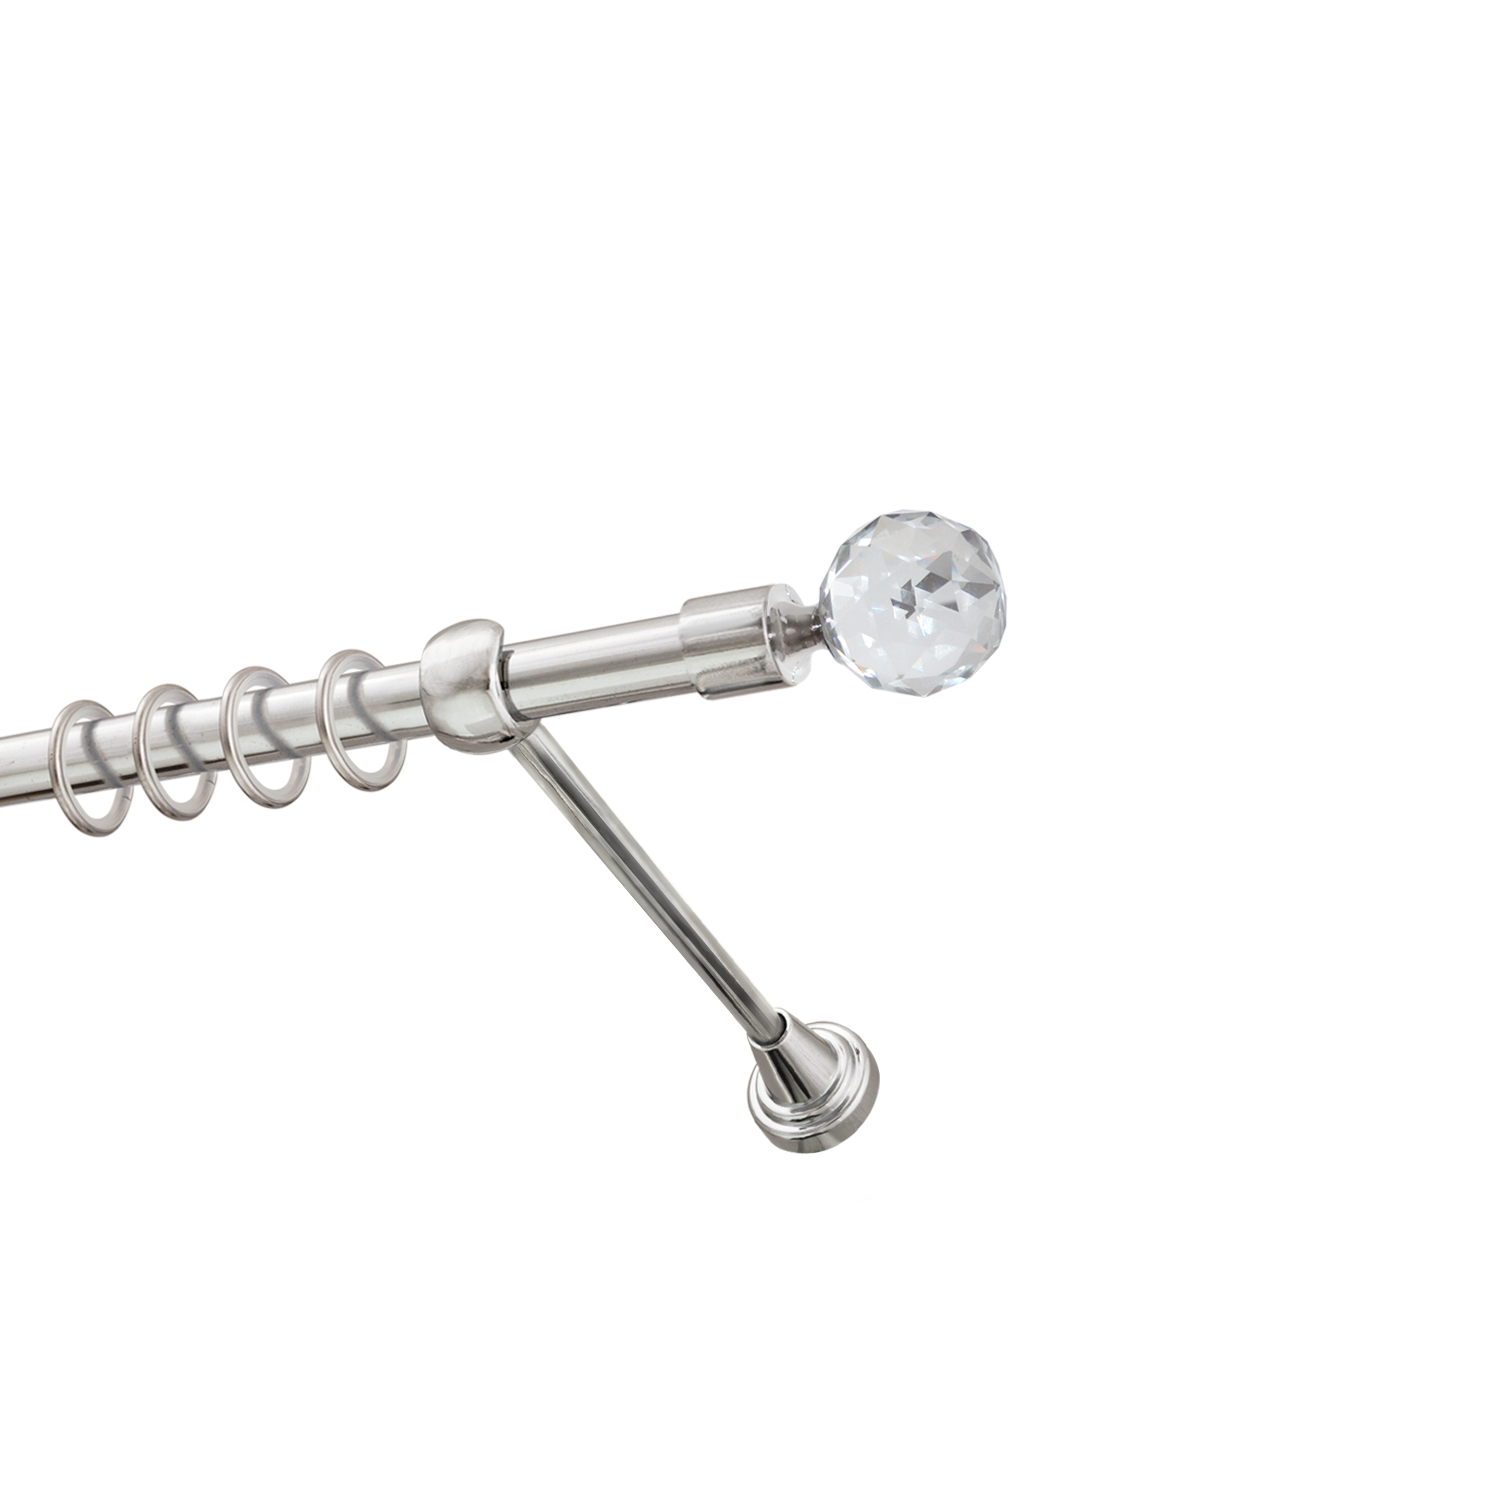 Металлический карниз для штор Карат, однорядный 16 мм, серебро, гладкая штанга, длина 240 см - фото Wikidecor.ru